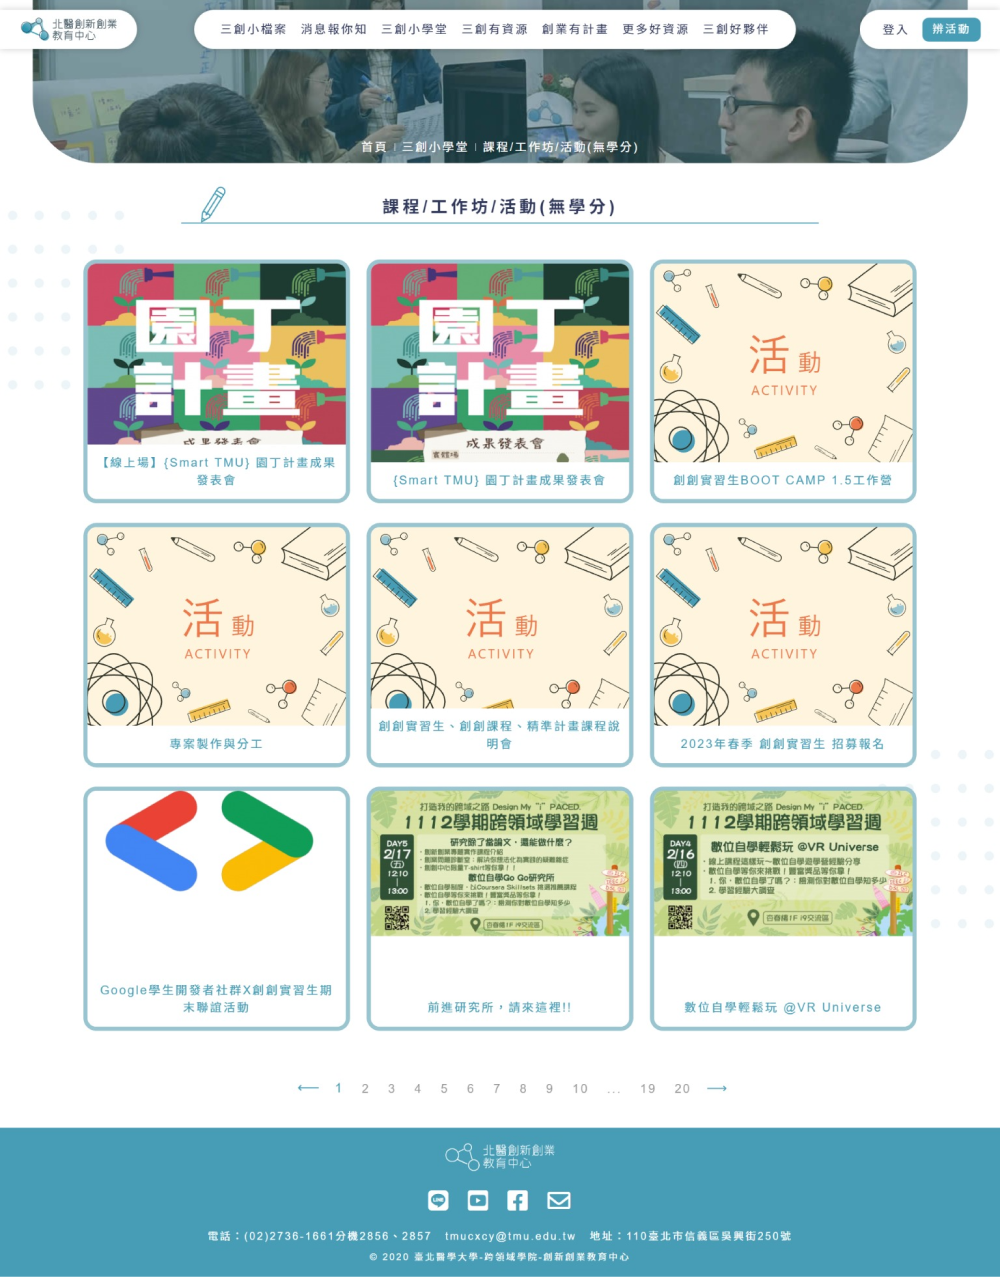 臺北醫學大學創新創業教育中心平台活動頁面展示